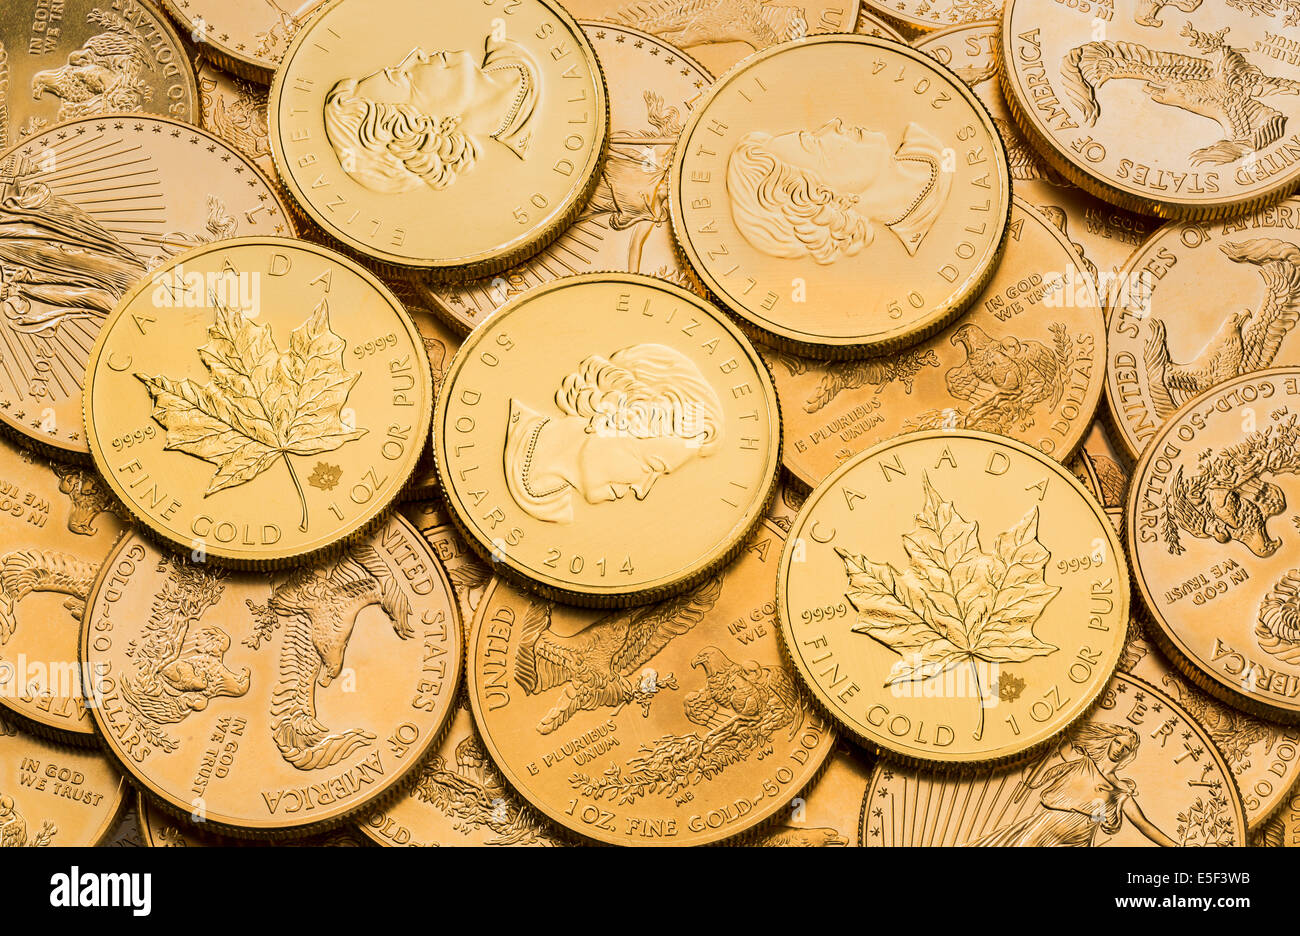 Eagle una onza troy de oro monedas de oro del tesoro estadounidense de menta y de oro canadiense Maple Leaf monedas Foto de stock